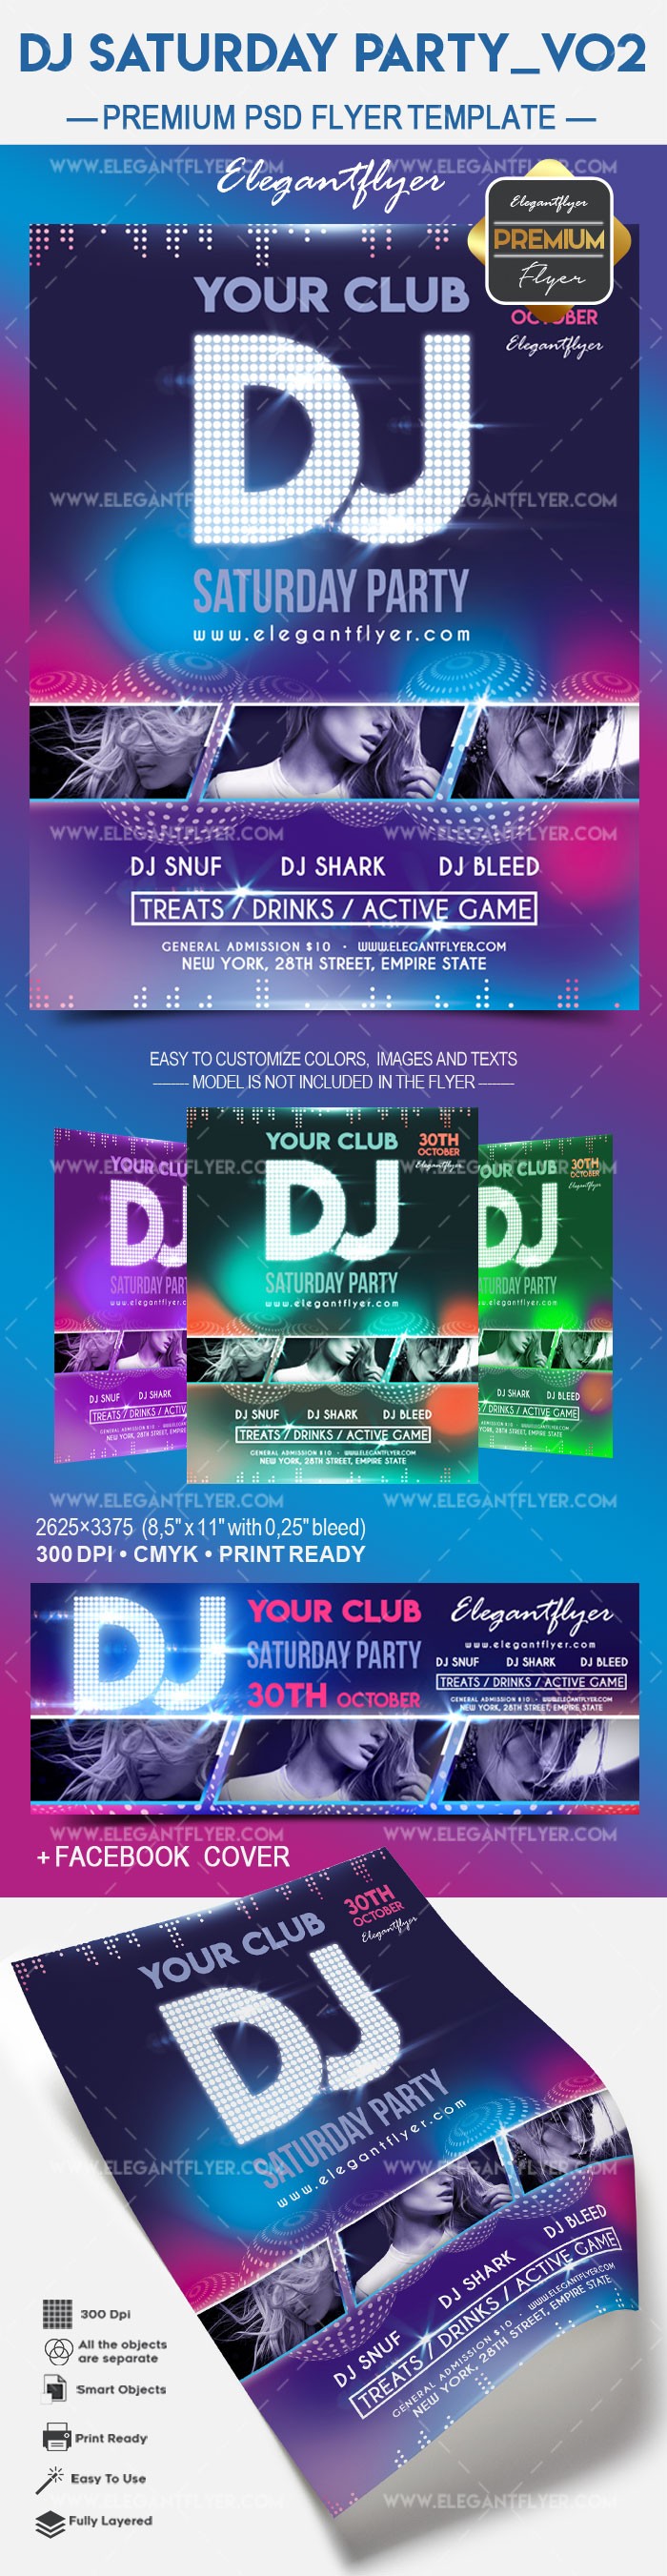 DJ Samstag Party v02 by ElegantFlyer